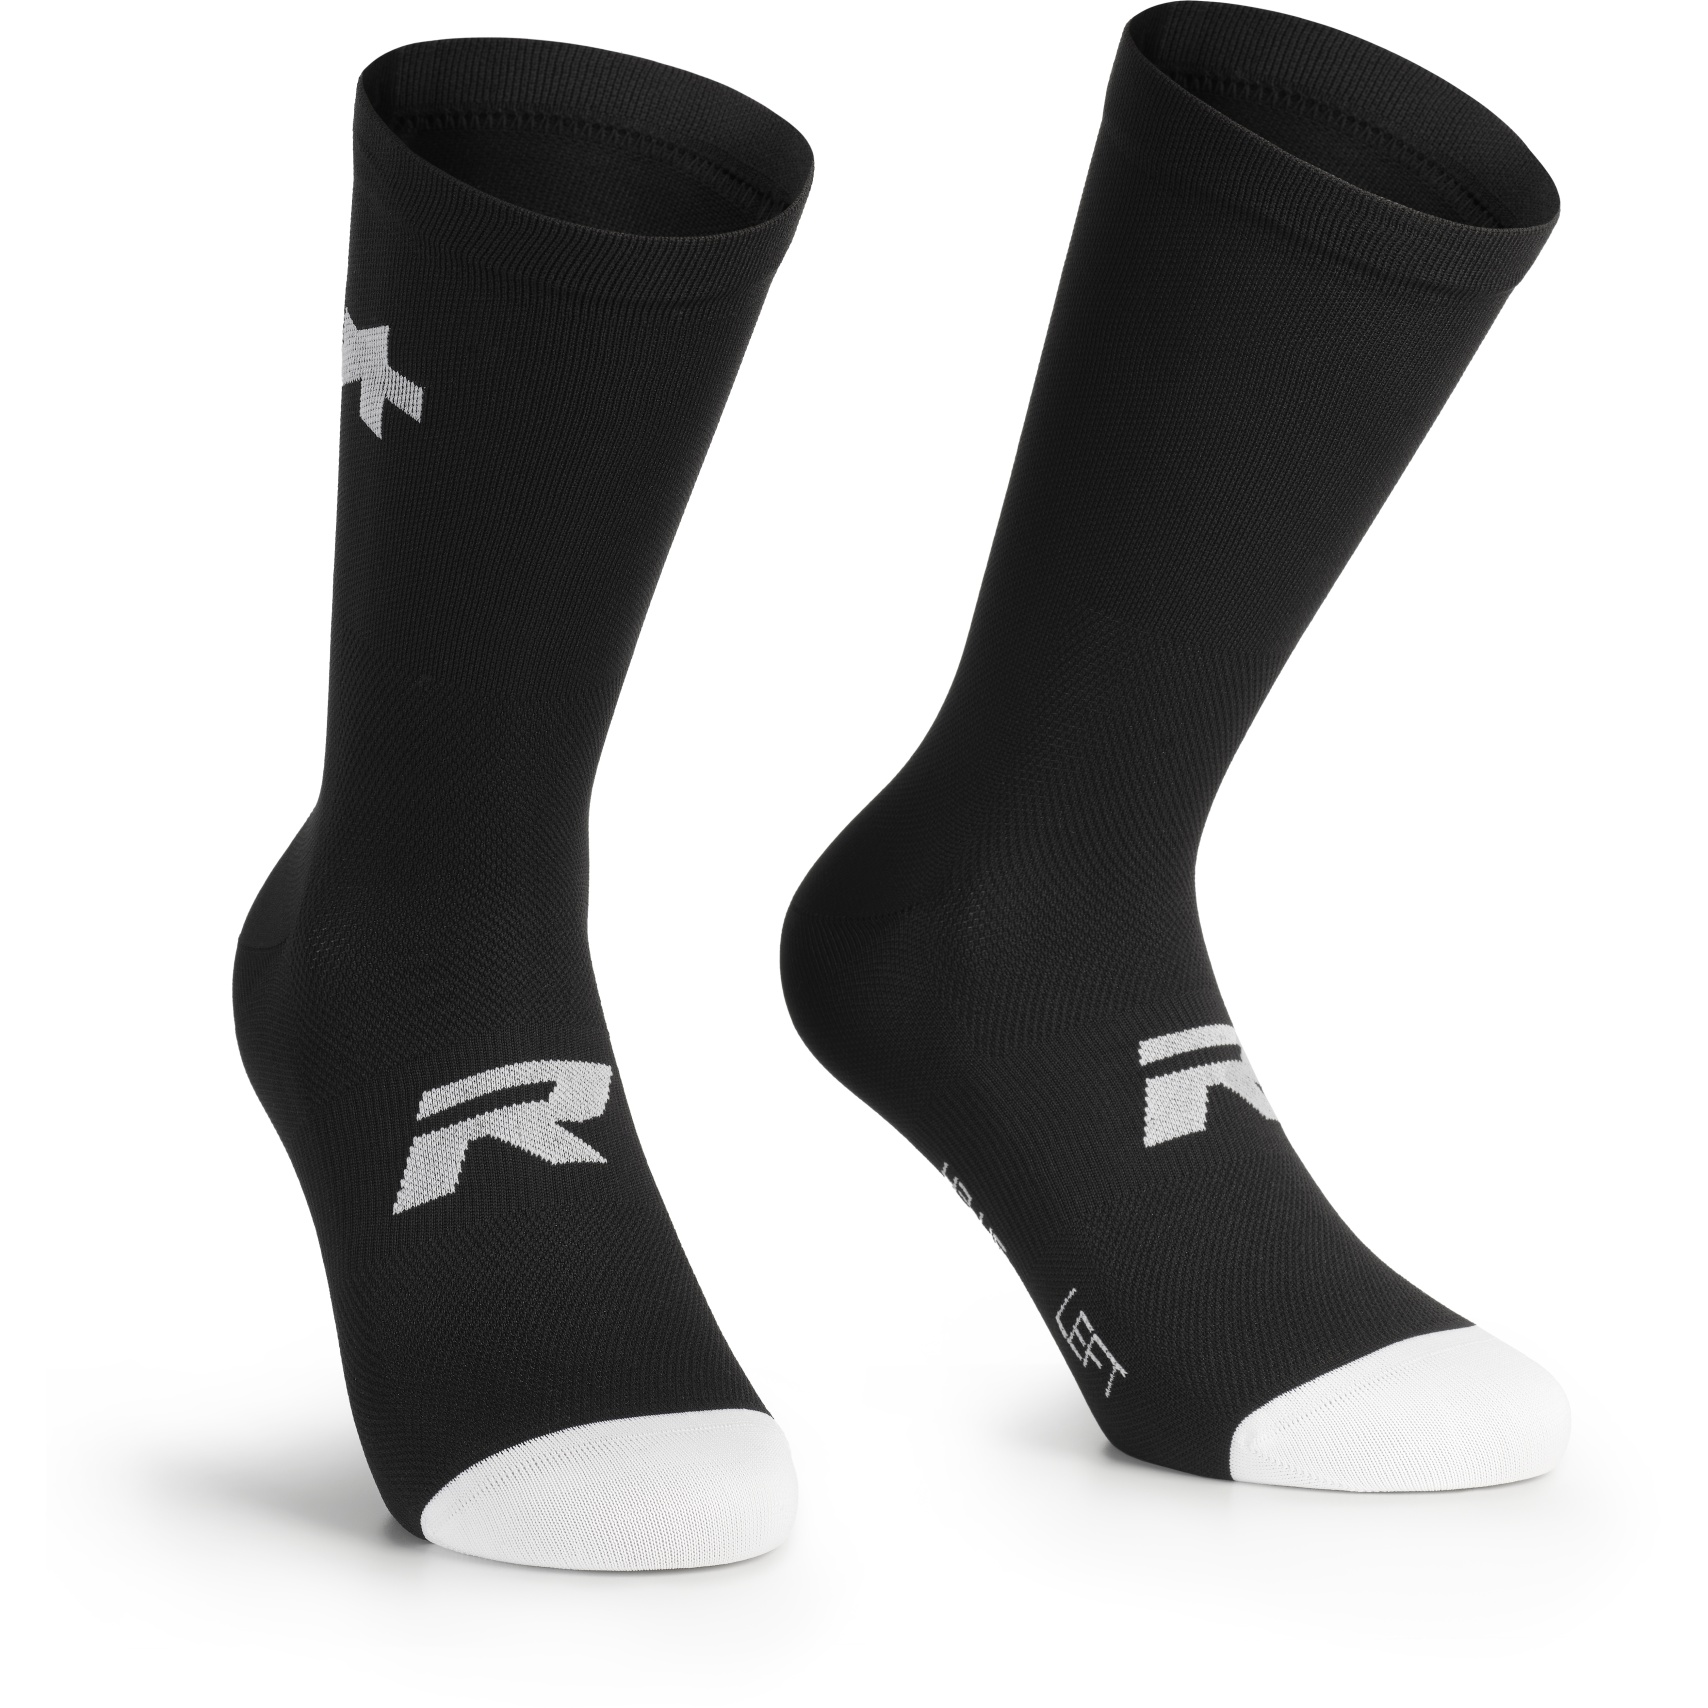 Produktbild von Assos R S9 Socken - 2er-Pack - black series